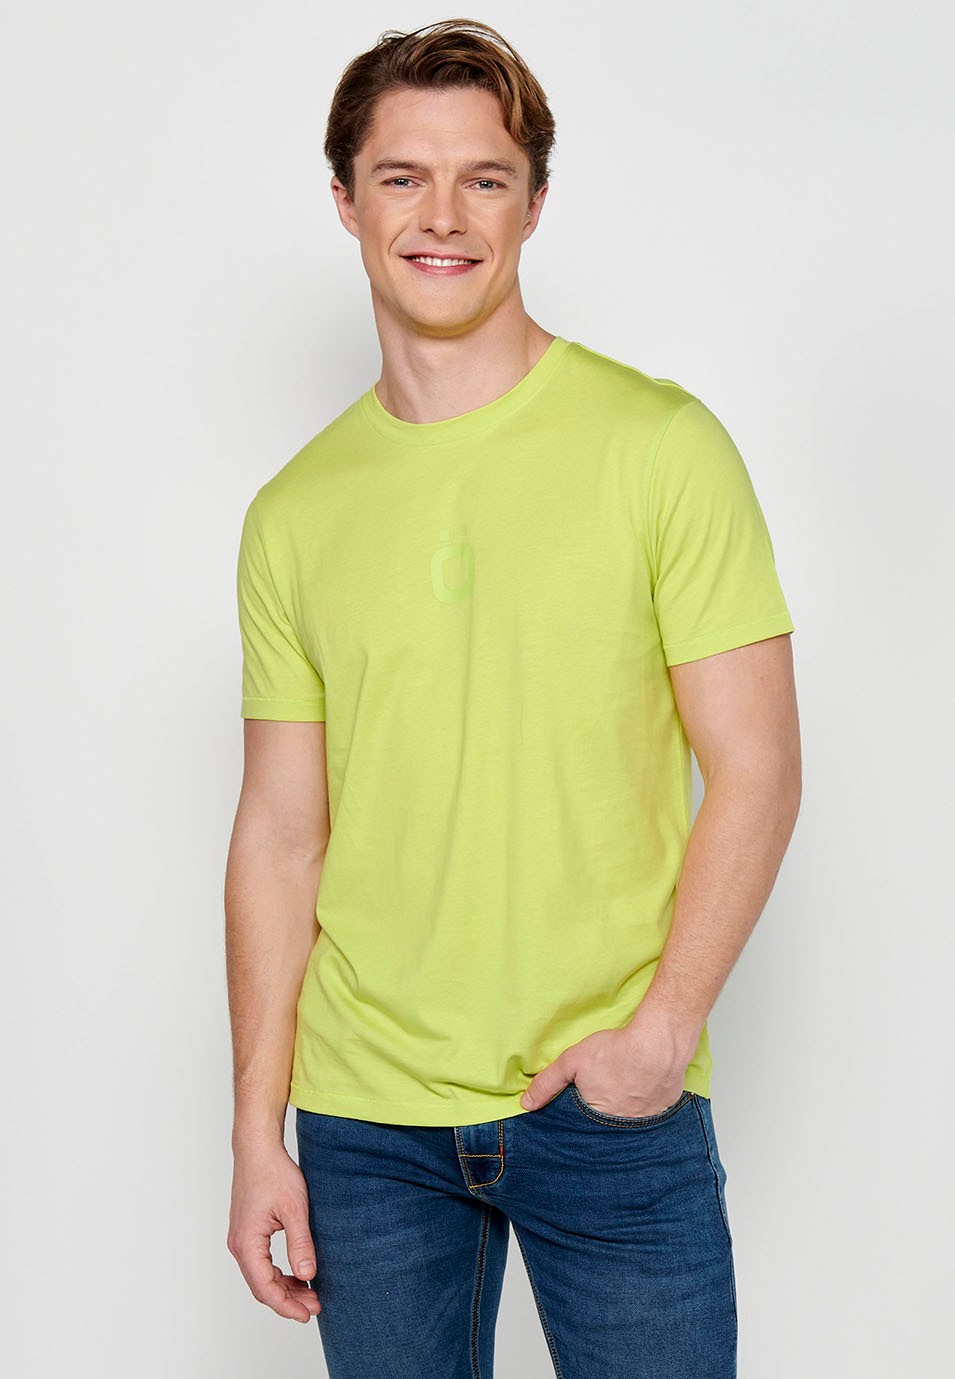 T-shirt à manches courtes et col rond avec logo sur le devant de couleur citron vert pour homme